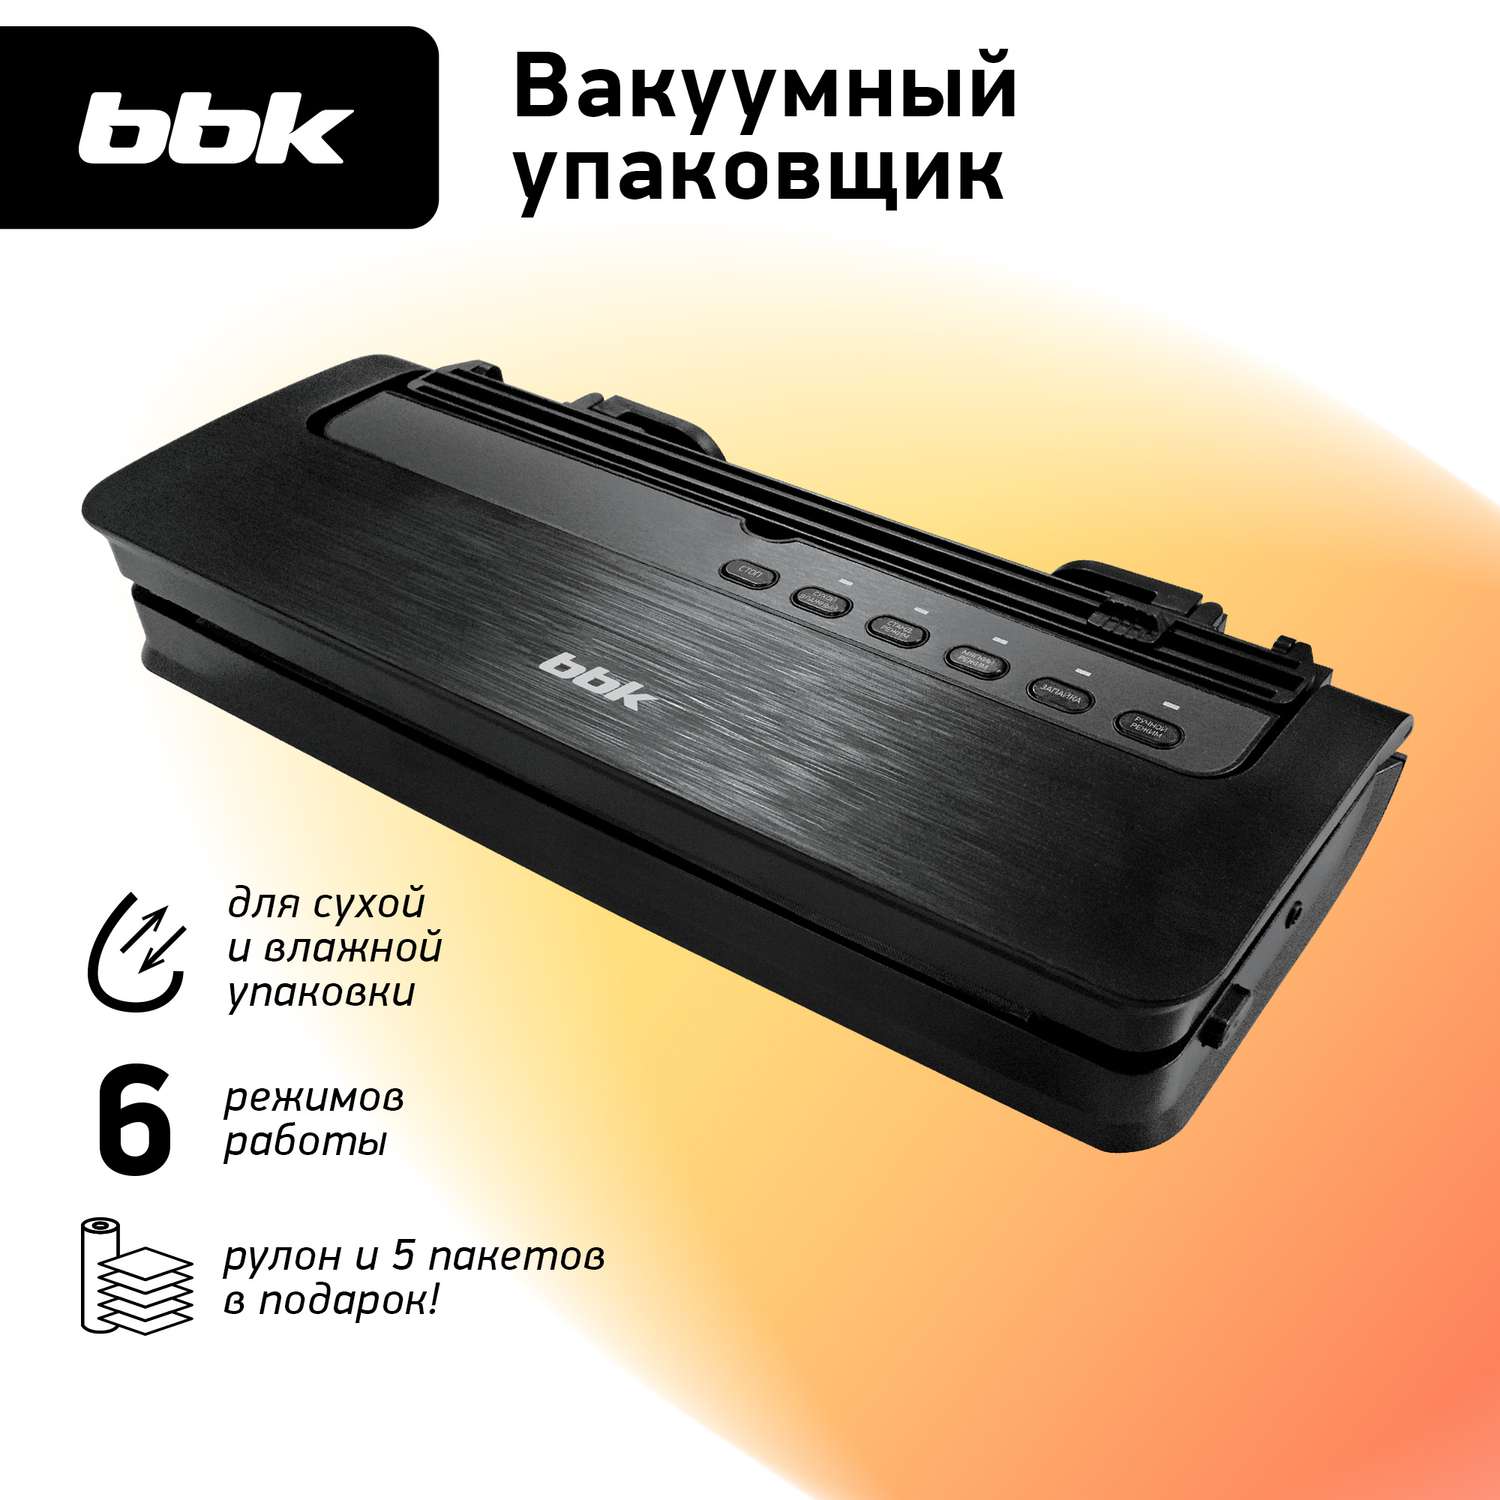 Вакуумный упаковщик BBK BVS801 цвет черный мощность 165 Вт электронное управление - фото 1